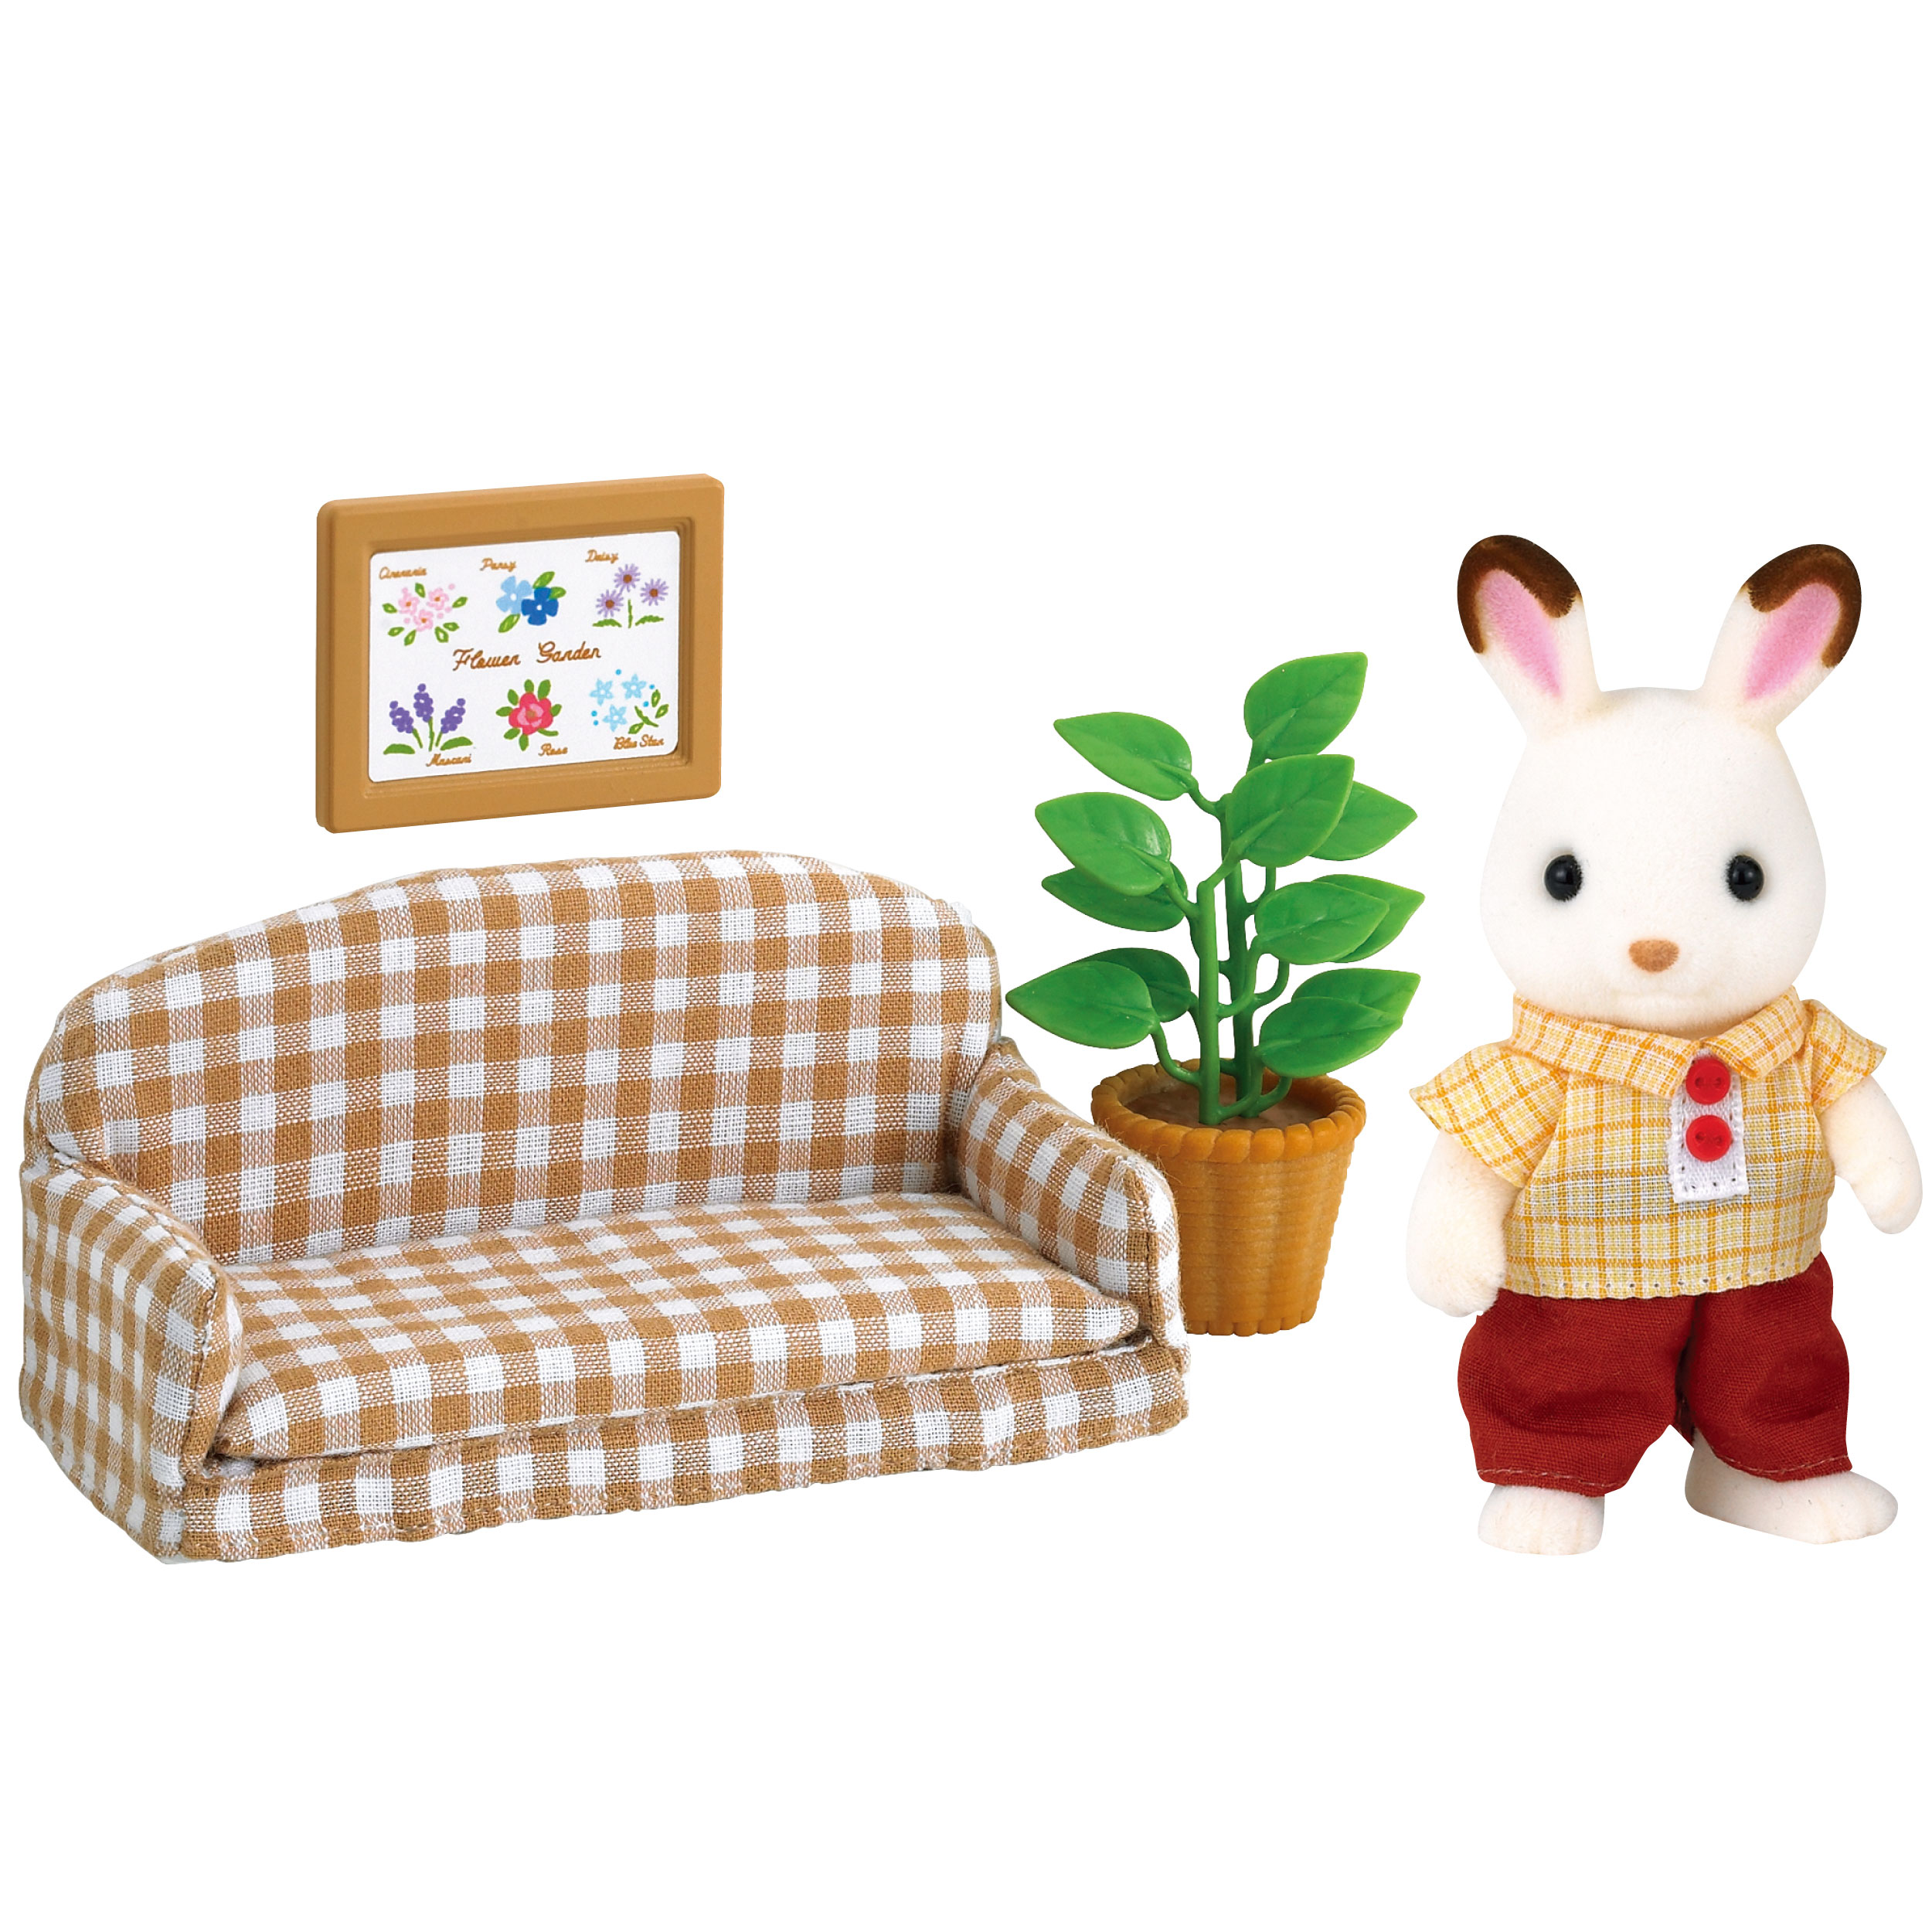 ショコラウサギのお父さん・家具セット / 家具と人形セット ...